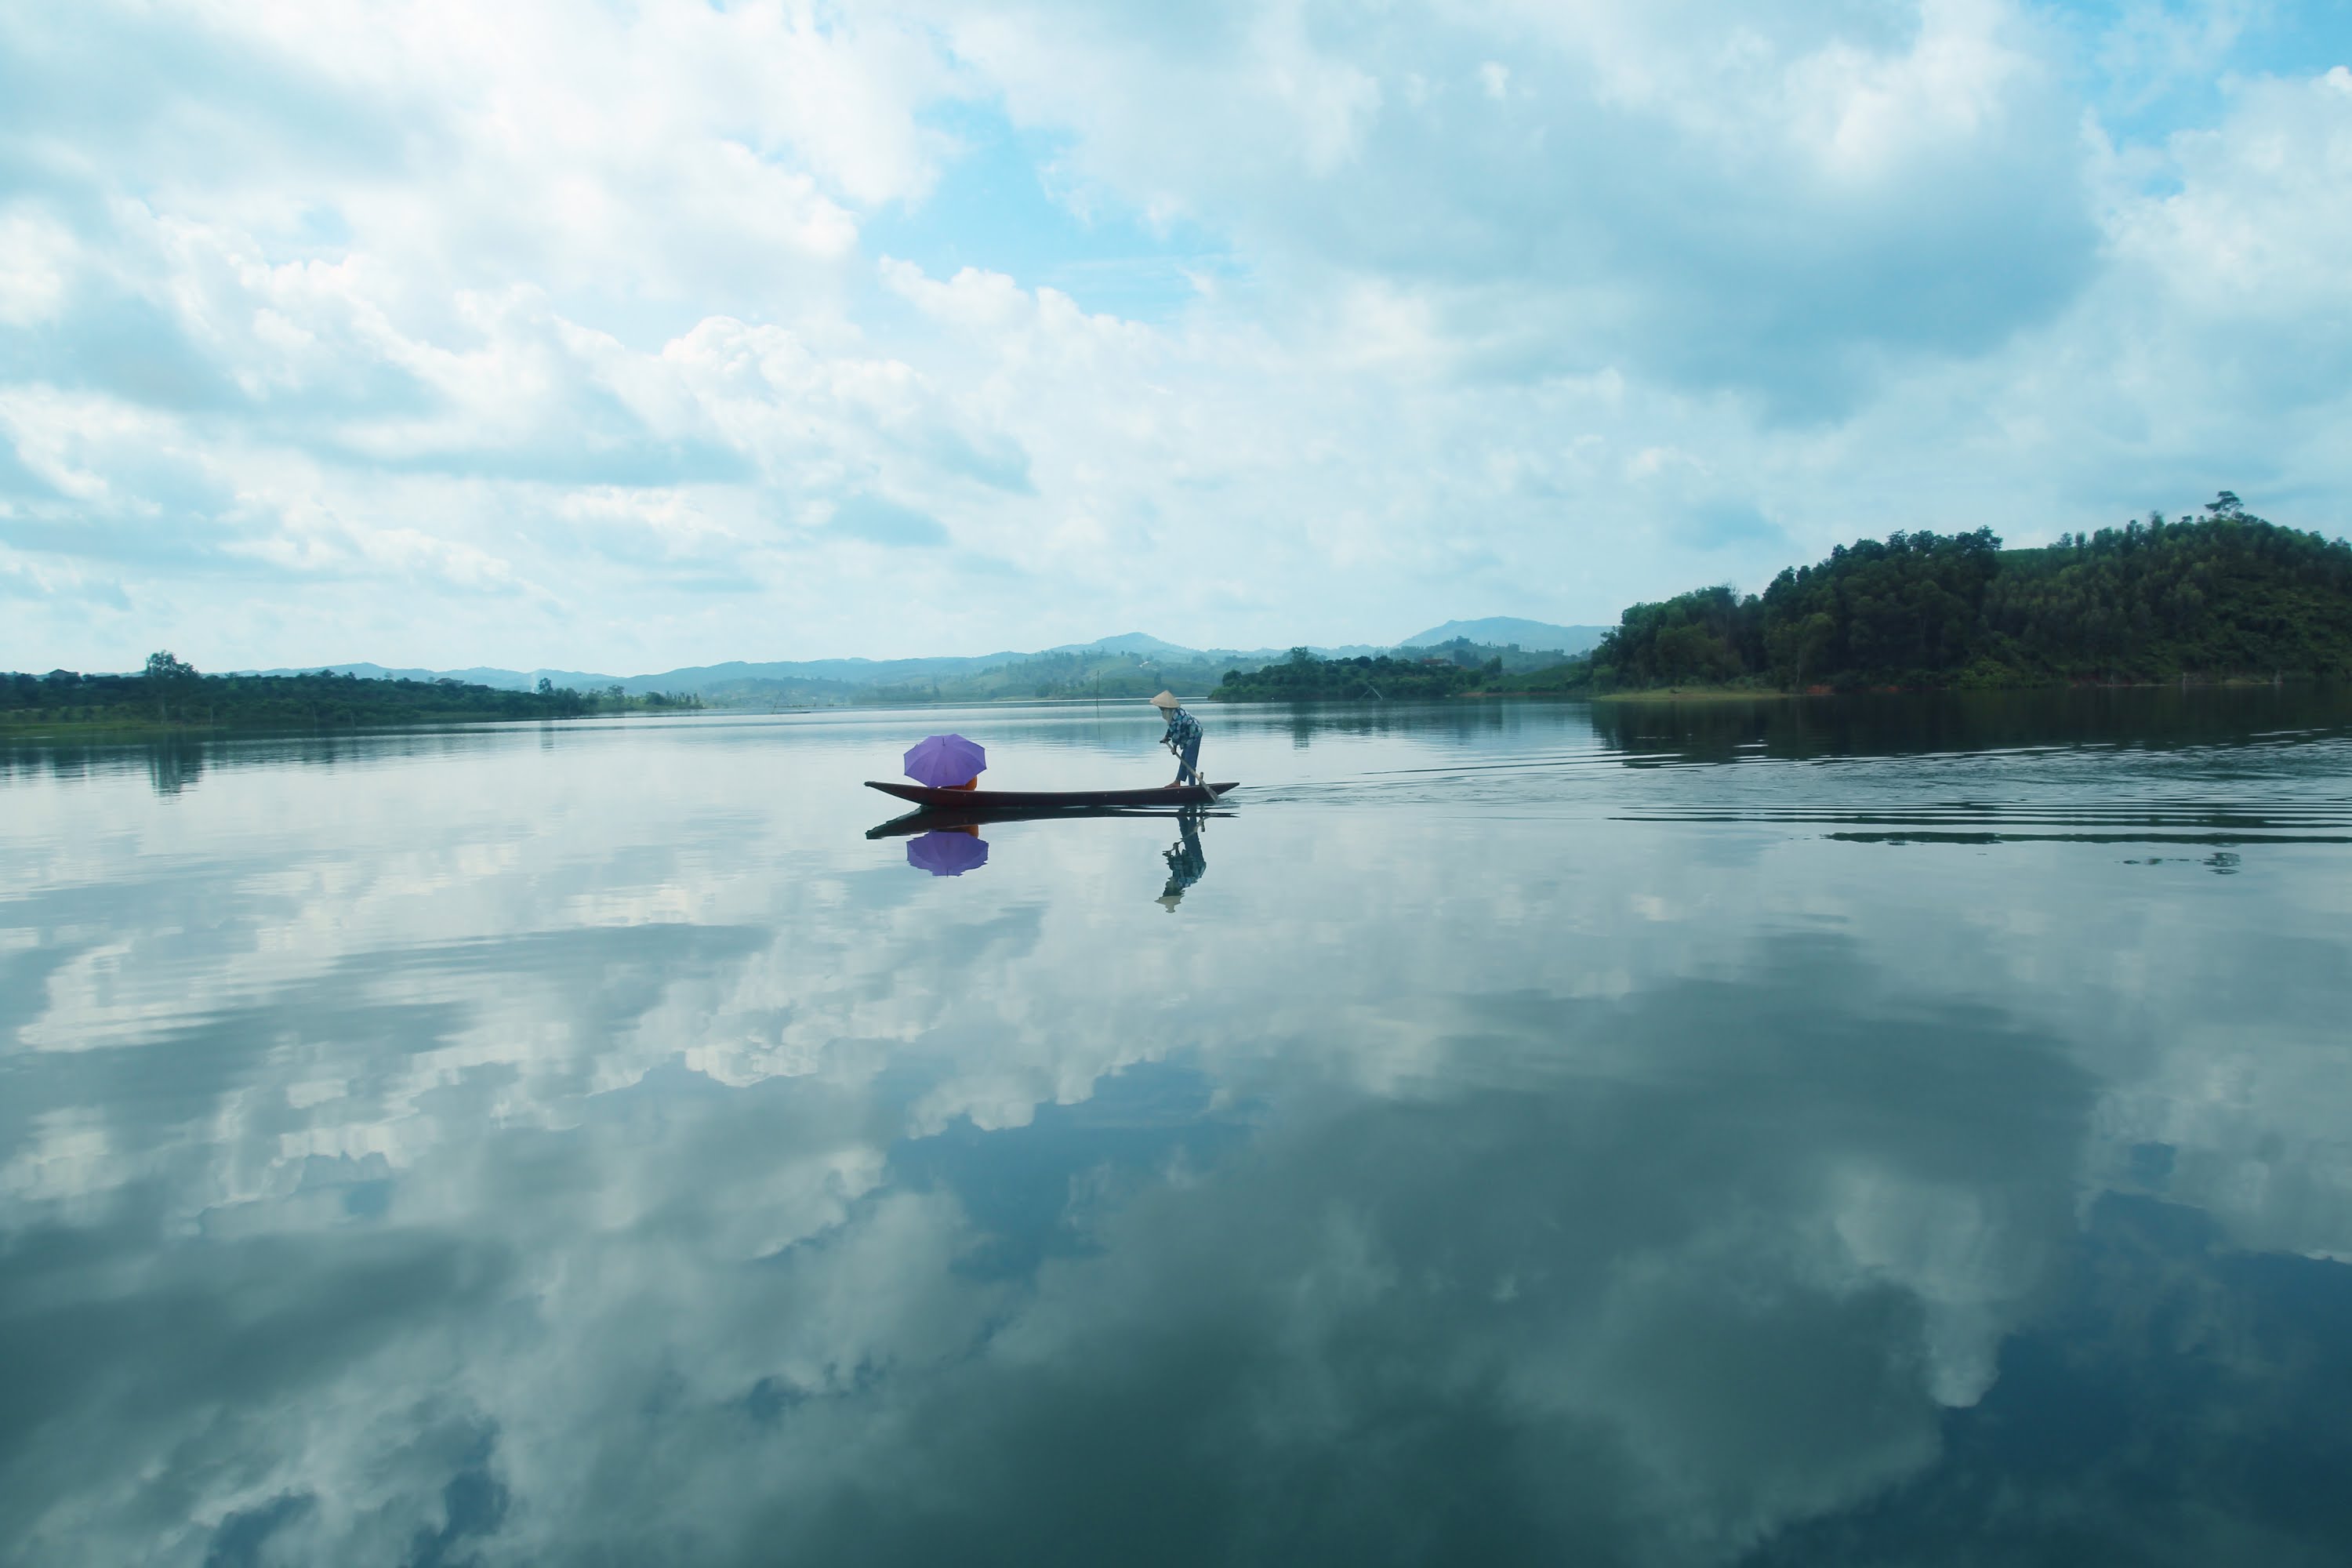 người chèo thuyền giữa Hồ Cấm Sơn, một người đang đứng trên thuyền chèo lái trên mặt hồ, núi đồi ở phía xa, bầu trời nhiều mây, ảnh chụp ngoài trời